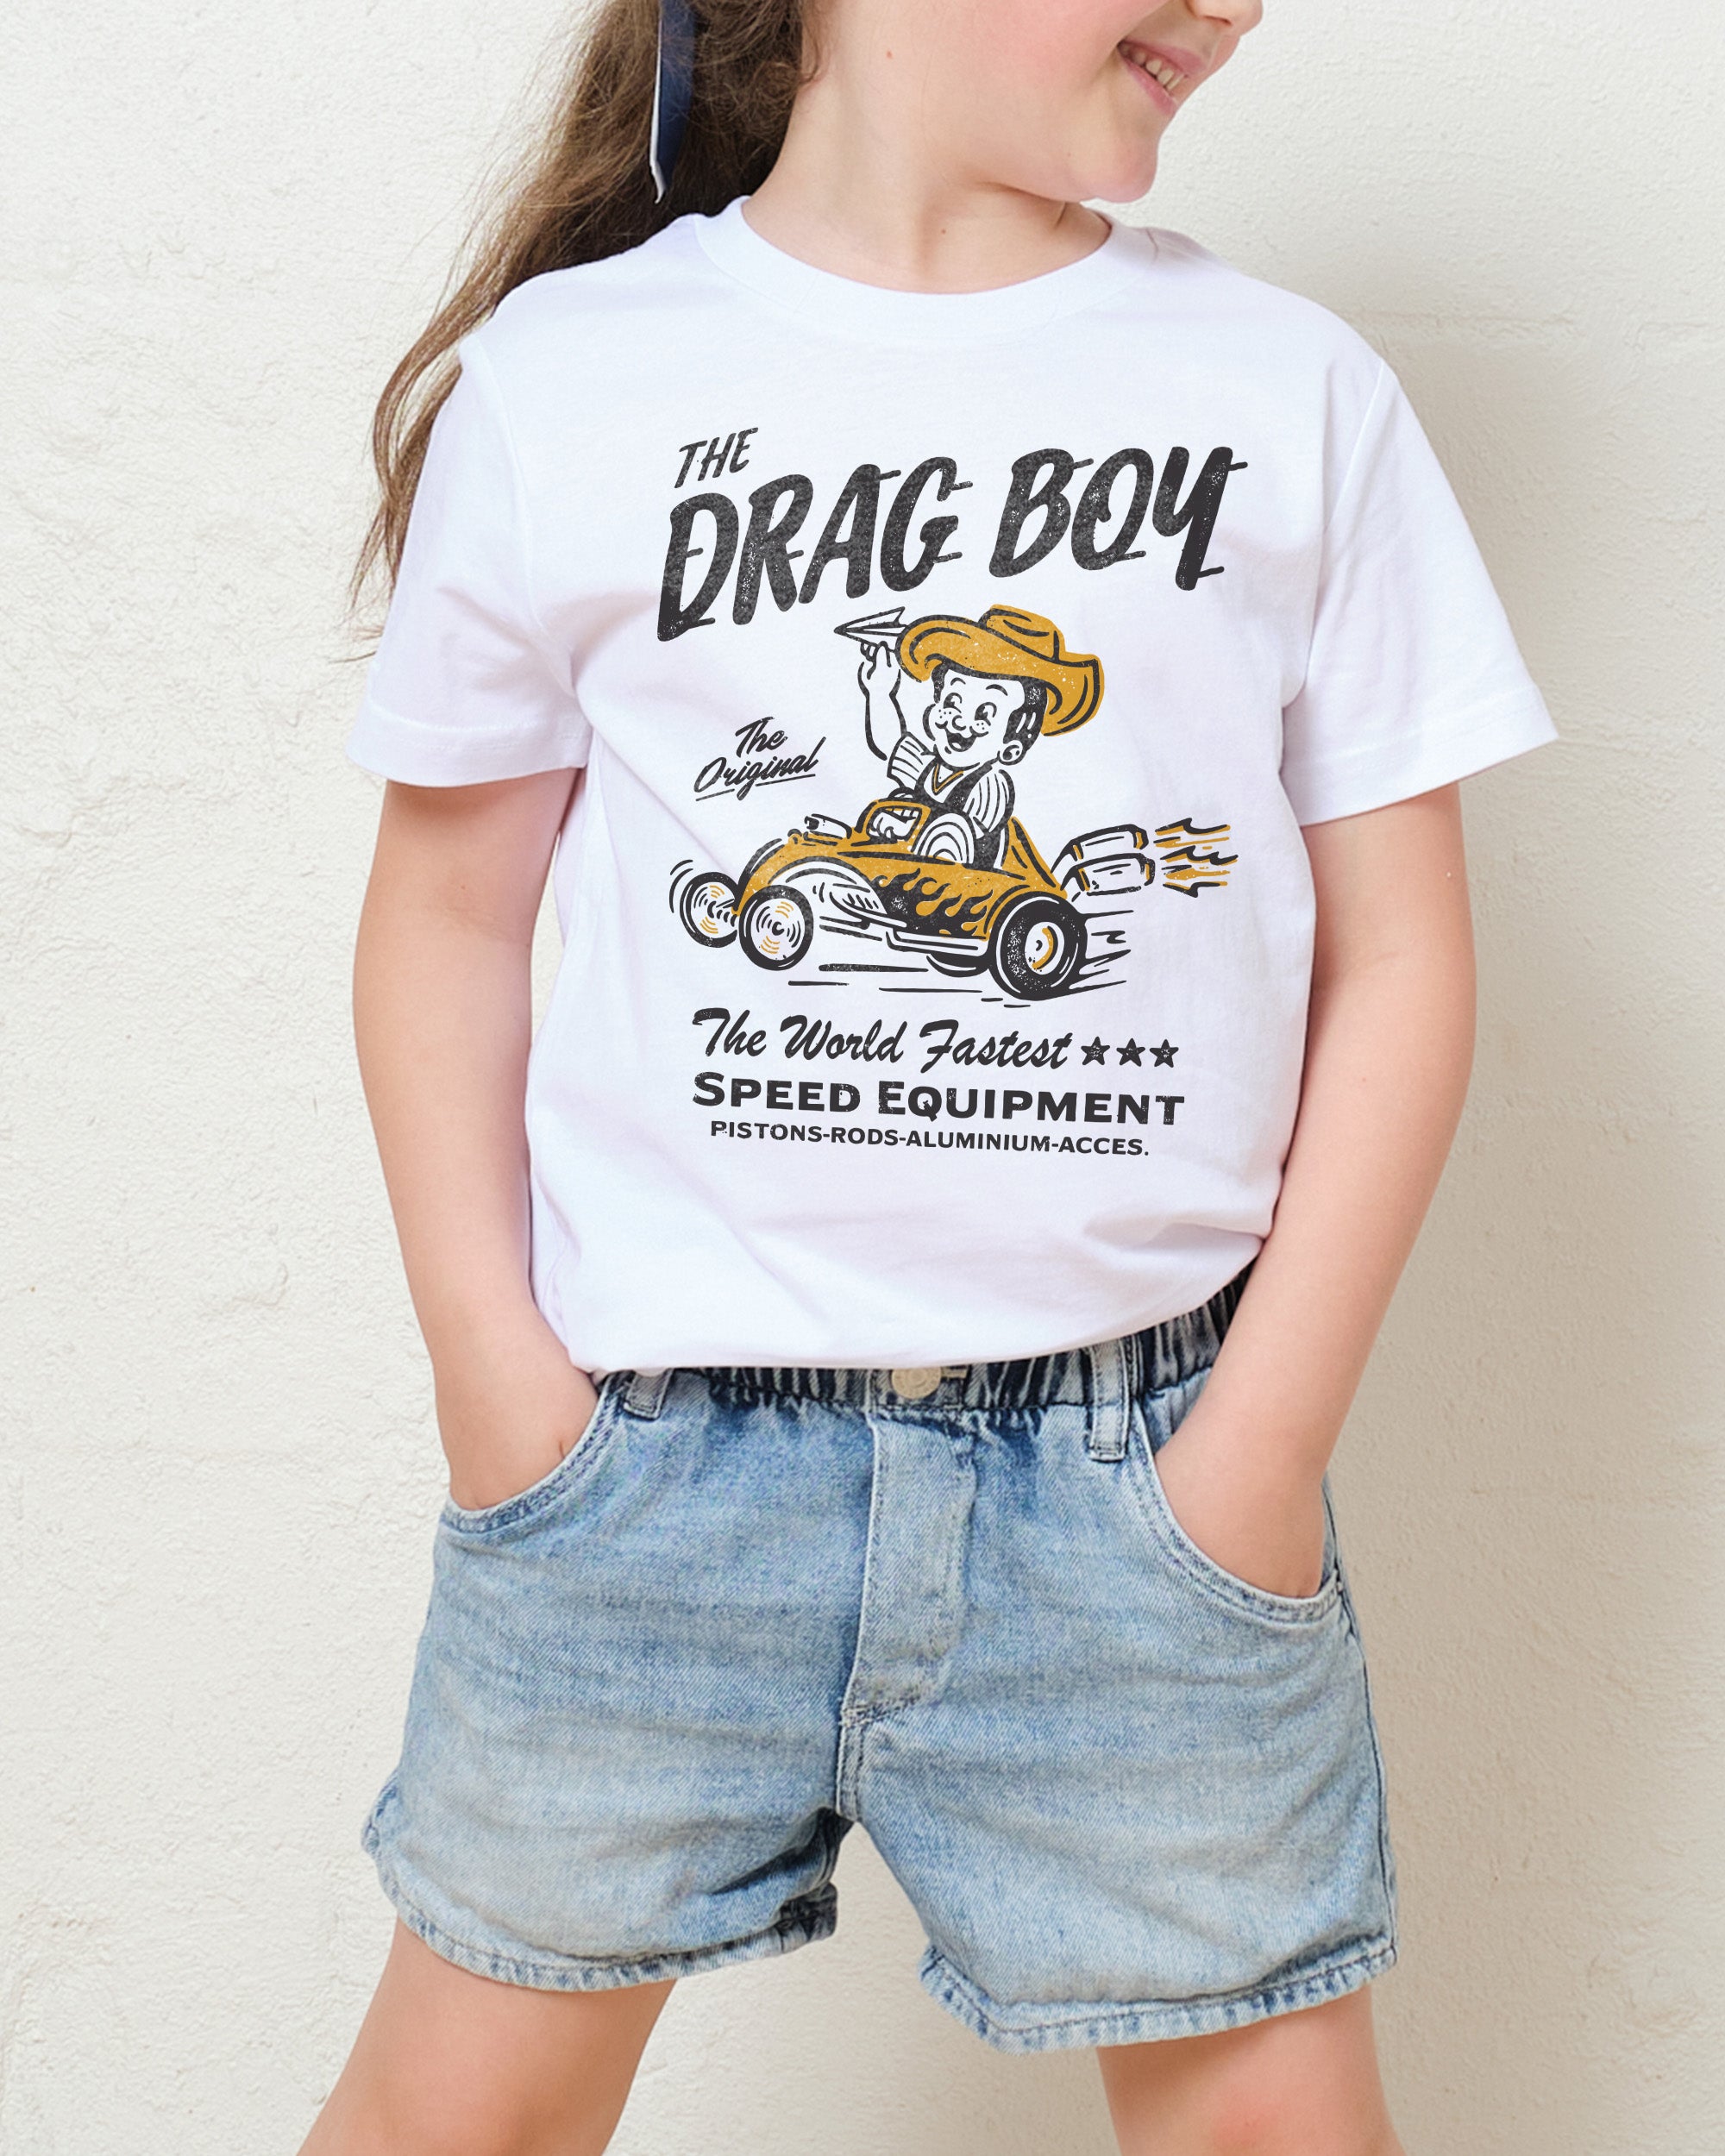 The Drag Boy Kids T-Shirt